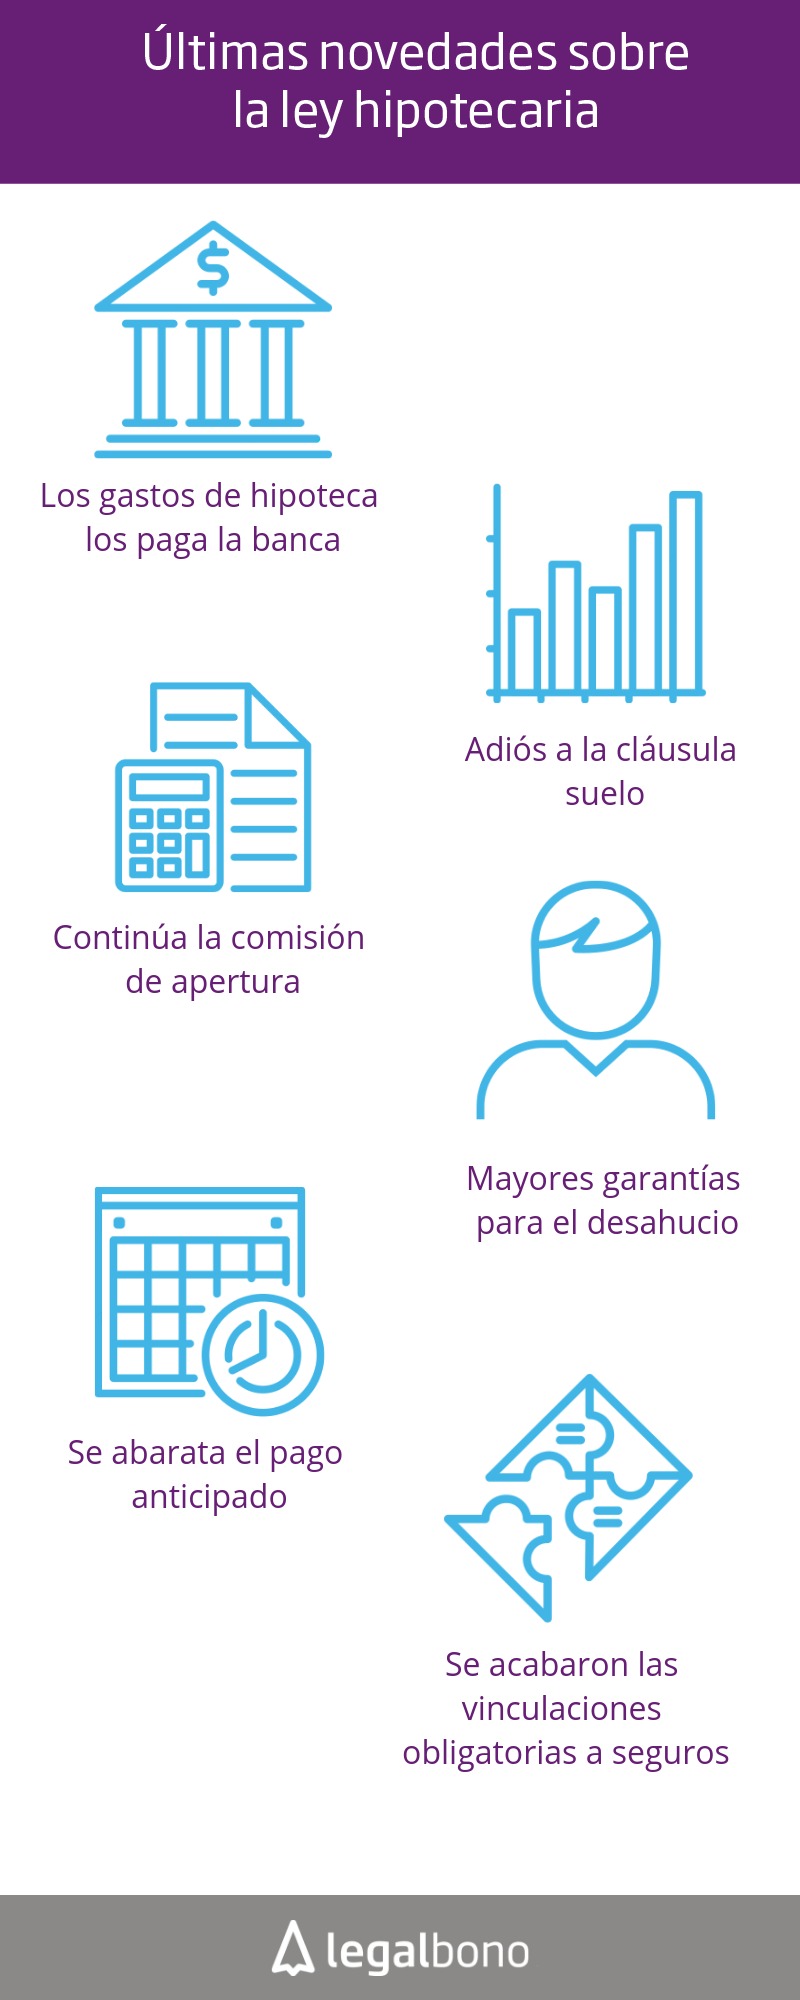 ¿Qué sabes de la ley hipotecaria en España? 14